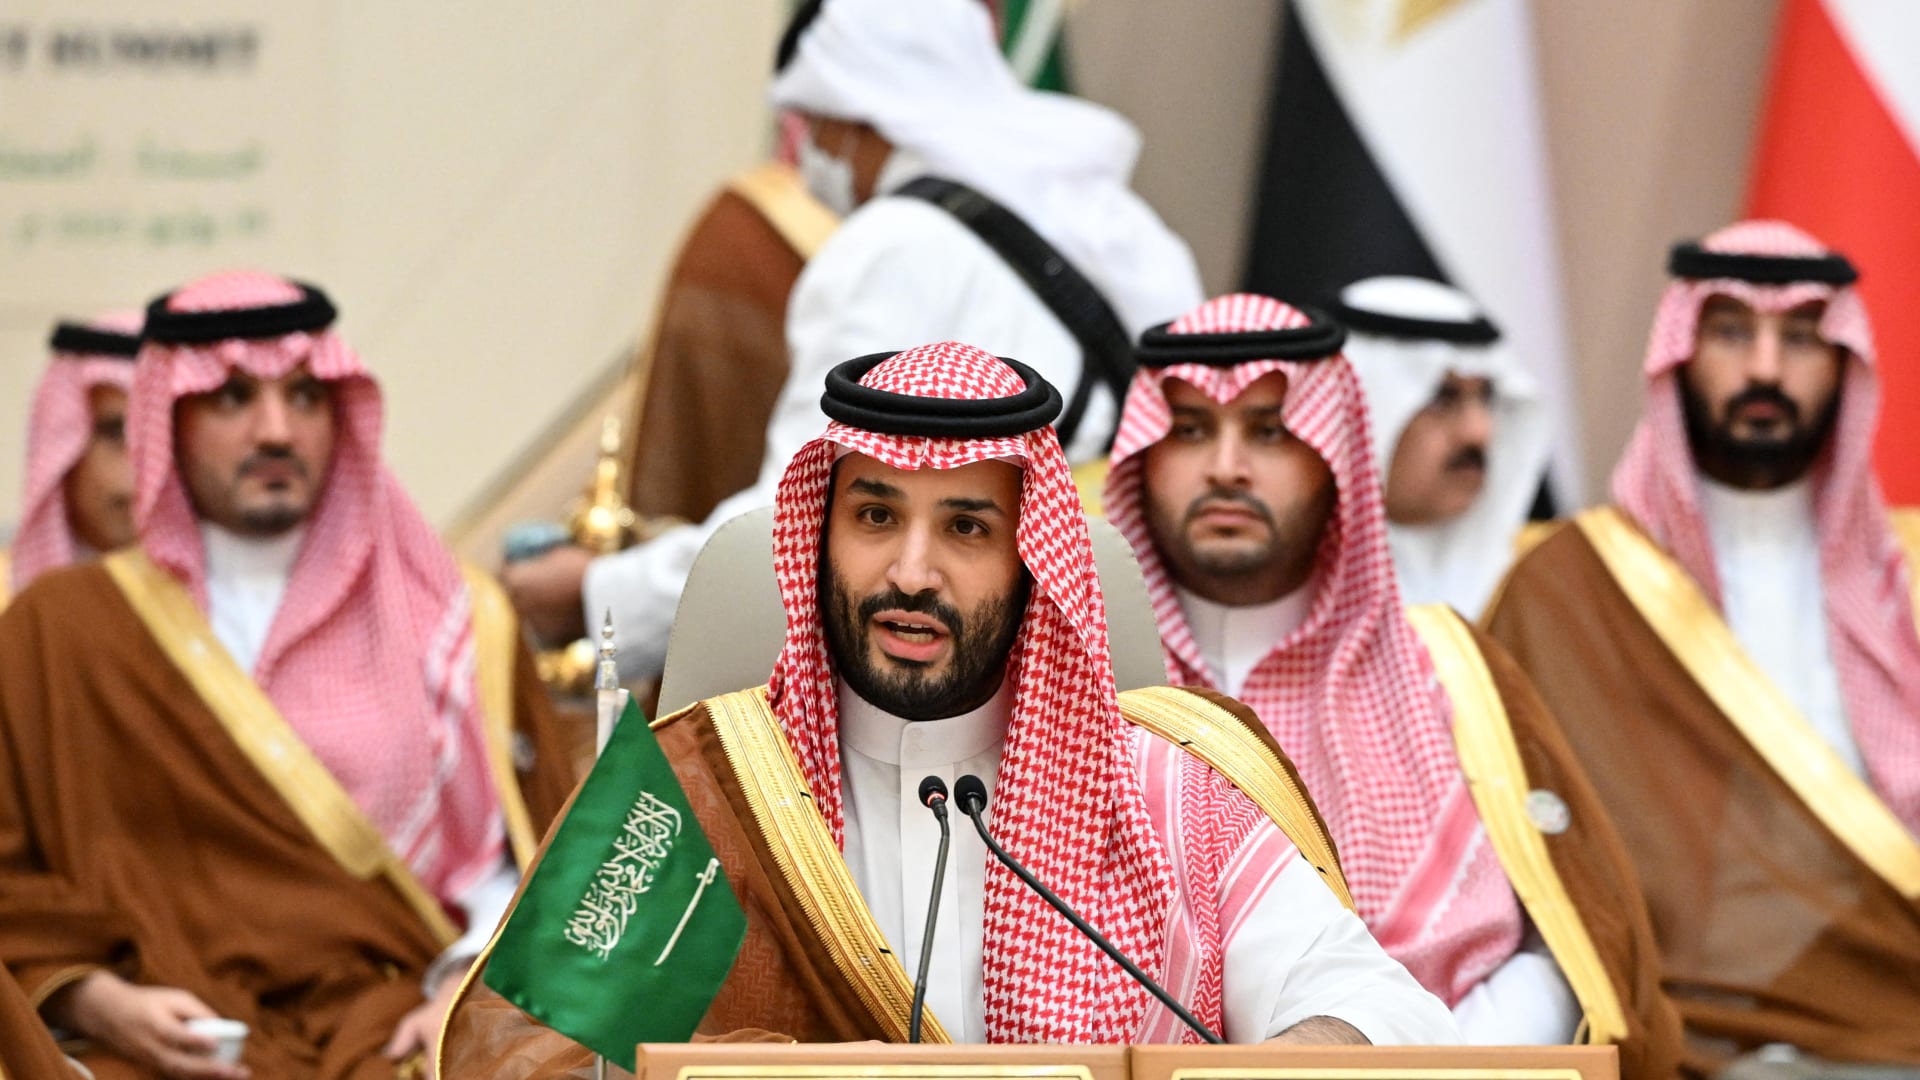 بعد انتقاده "سياسات غير واقعية".. محمد بن سلمان: السعودية ستنتج أكثر من 13 مليون برميل نفط يوميًا